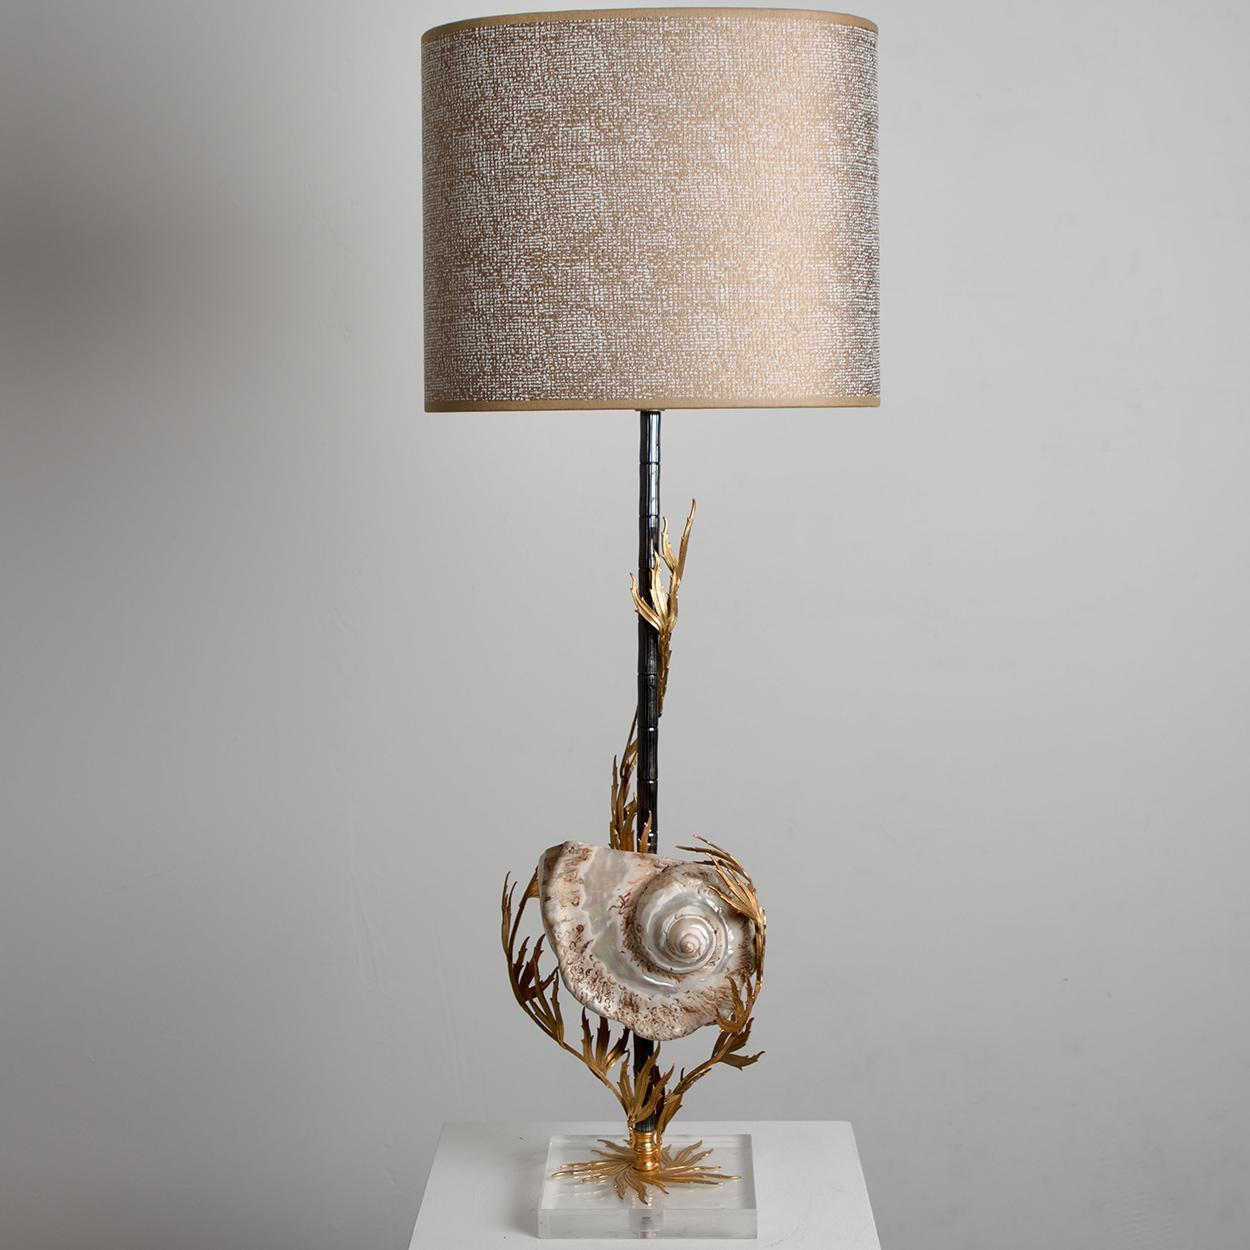 Une lampe de table unique avec un grand véritable coquillage sur la base. La lampe est ornée de magnifiques détails en corail en laiton et est livrée avec un abat-jour semi-éclatant fait à la main qui donne une lumière chaude.
La lampe est